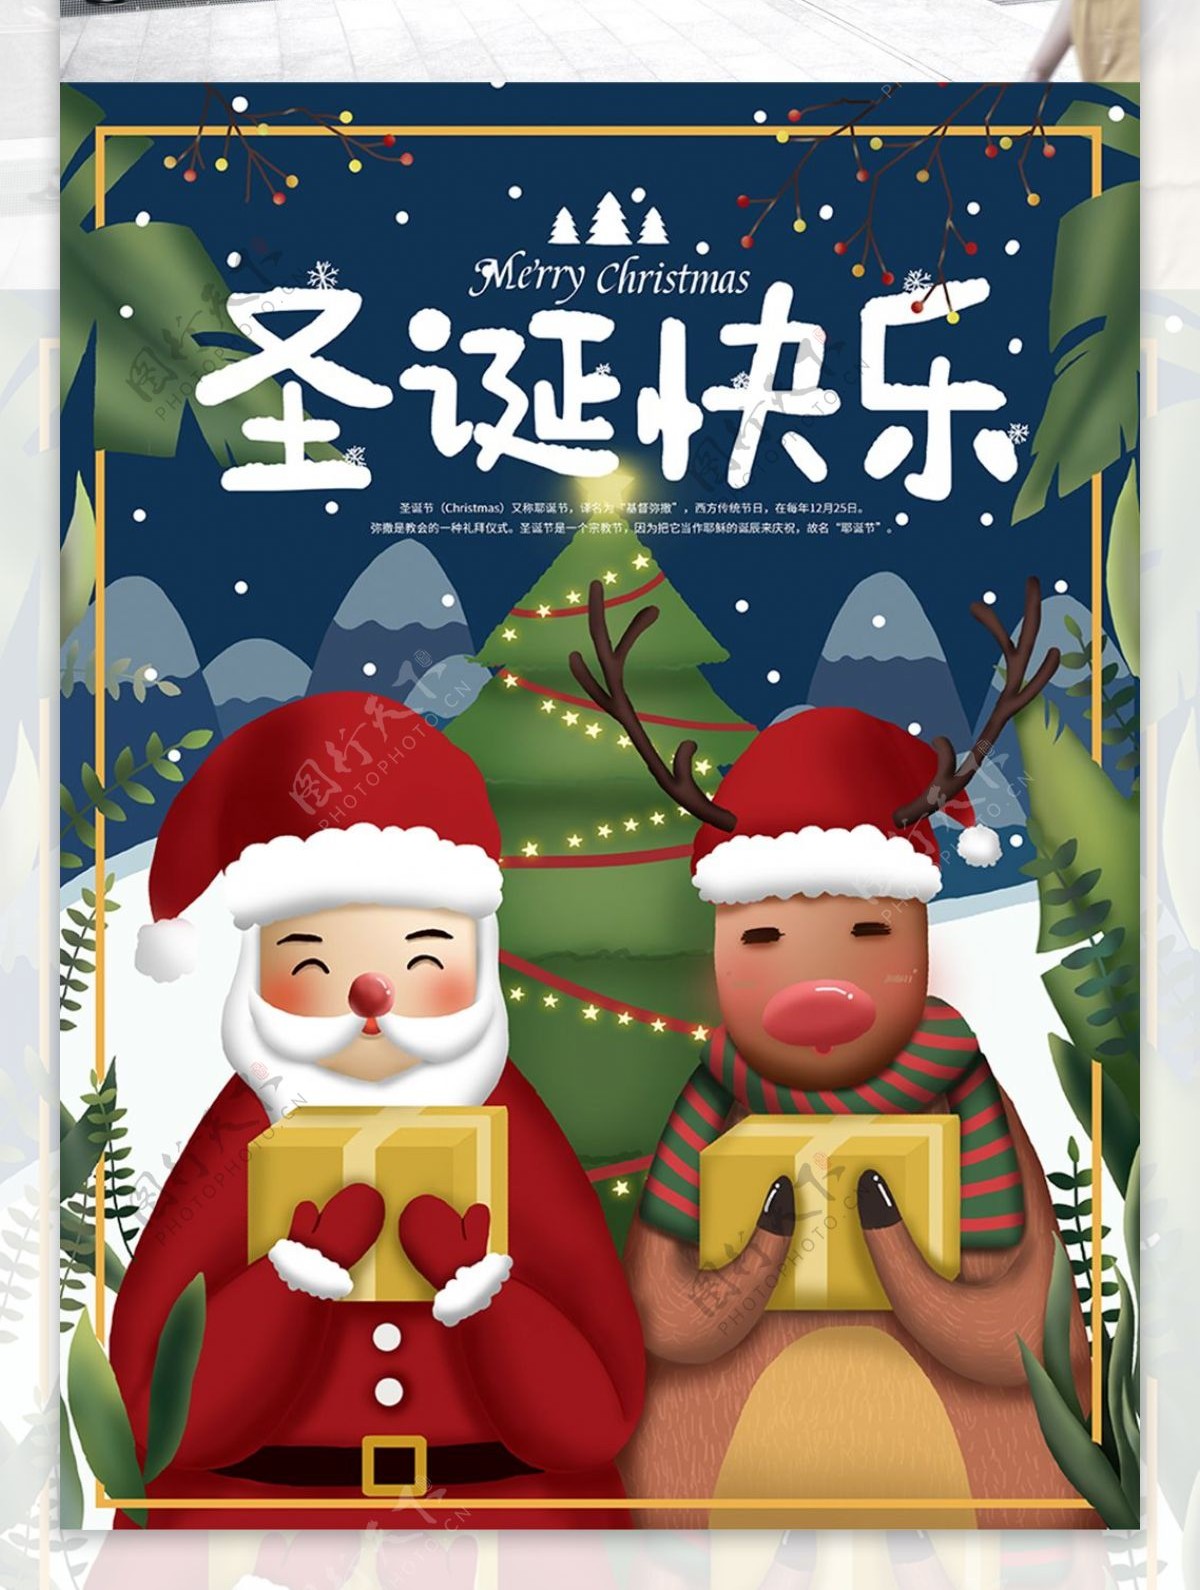 原创手绘插画圣诞节节日海报